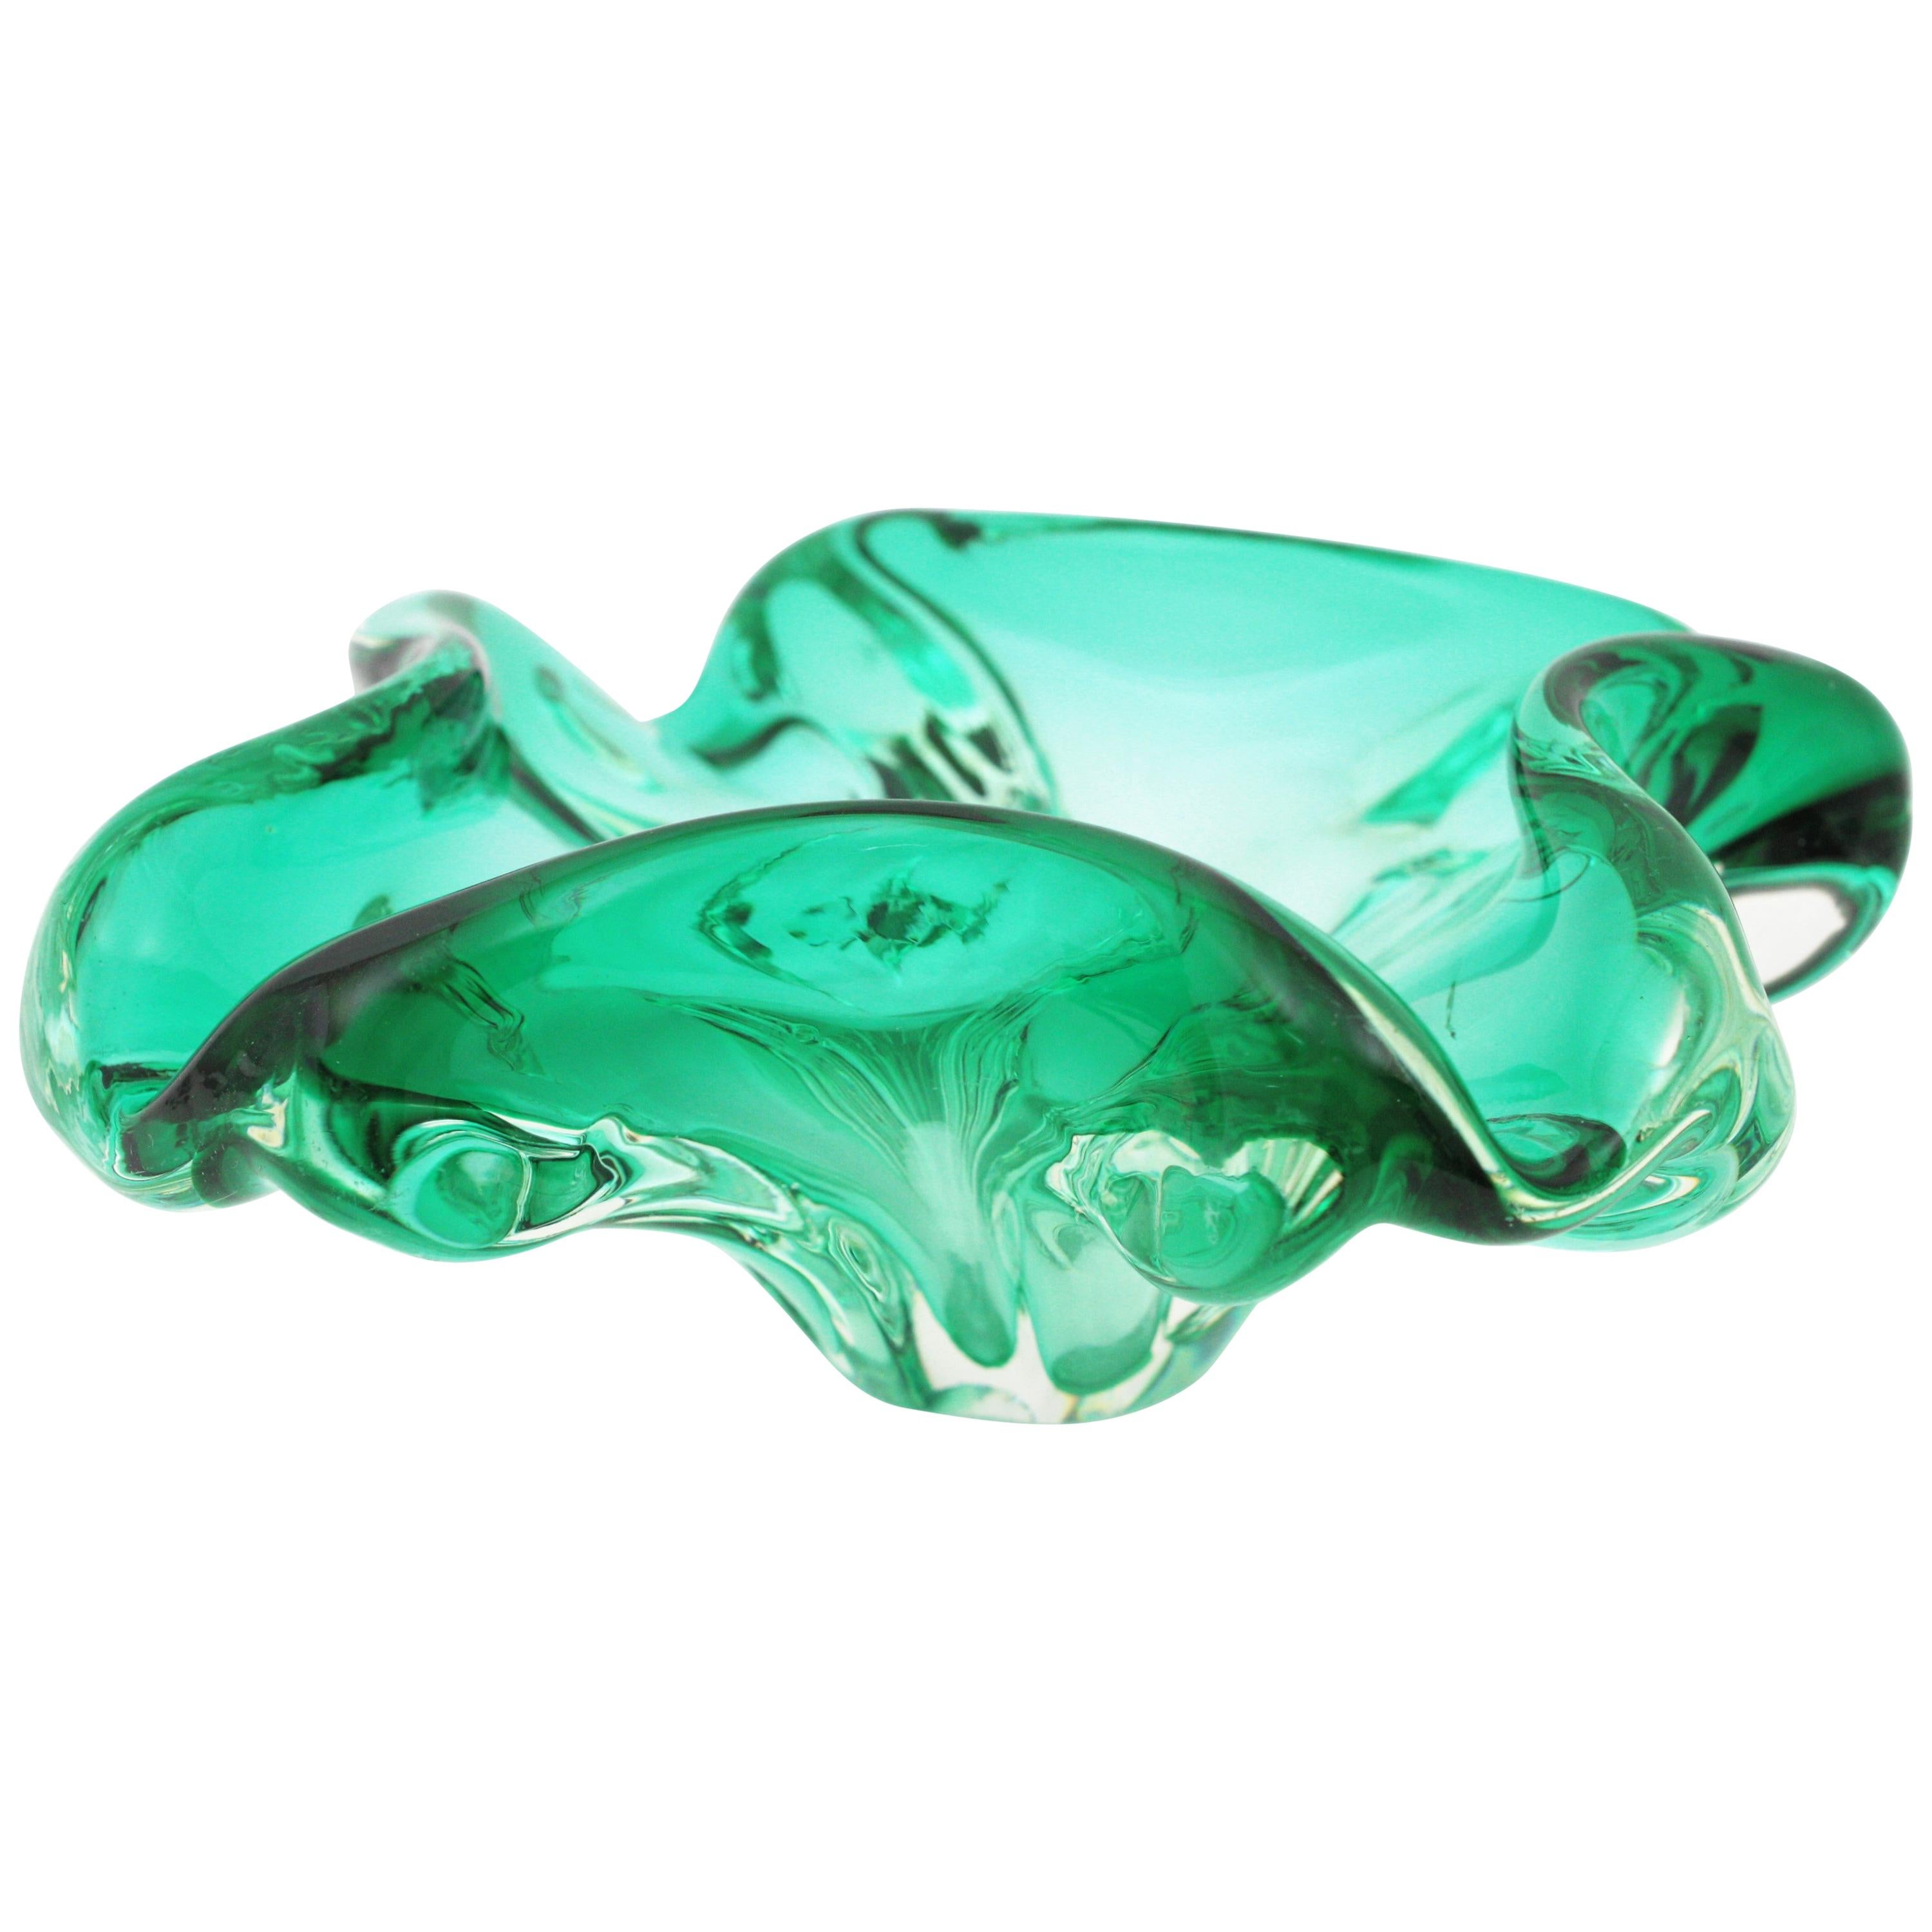 Murano Sommerso Aqua Green Art Glass Bowl, Ashtray or Vide-Poche